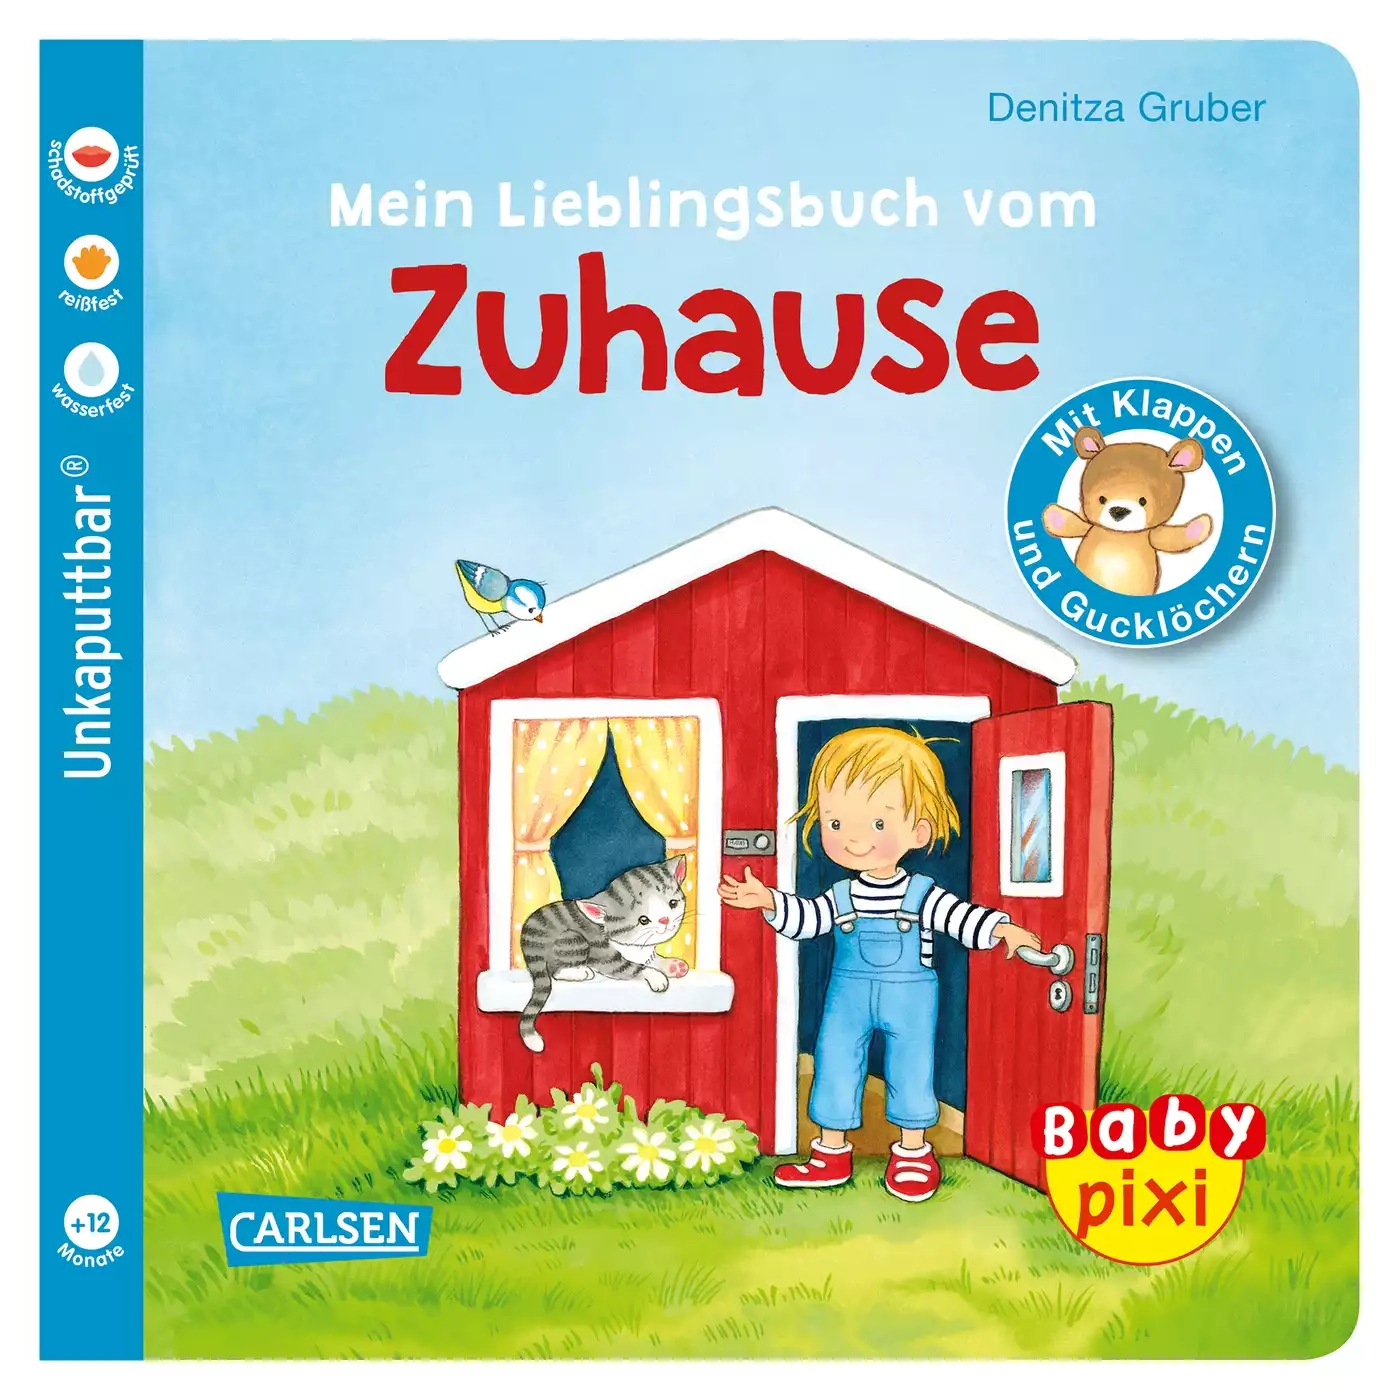 Baby Pixi - Mein Lieblingsbuch vom Zuhause CARLSEN 2000579081019 1